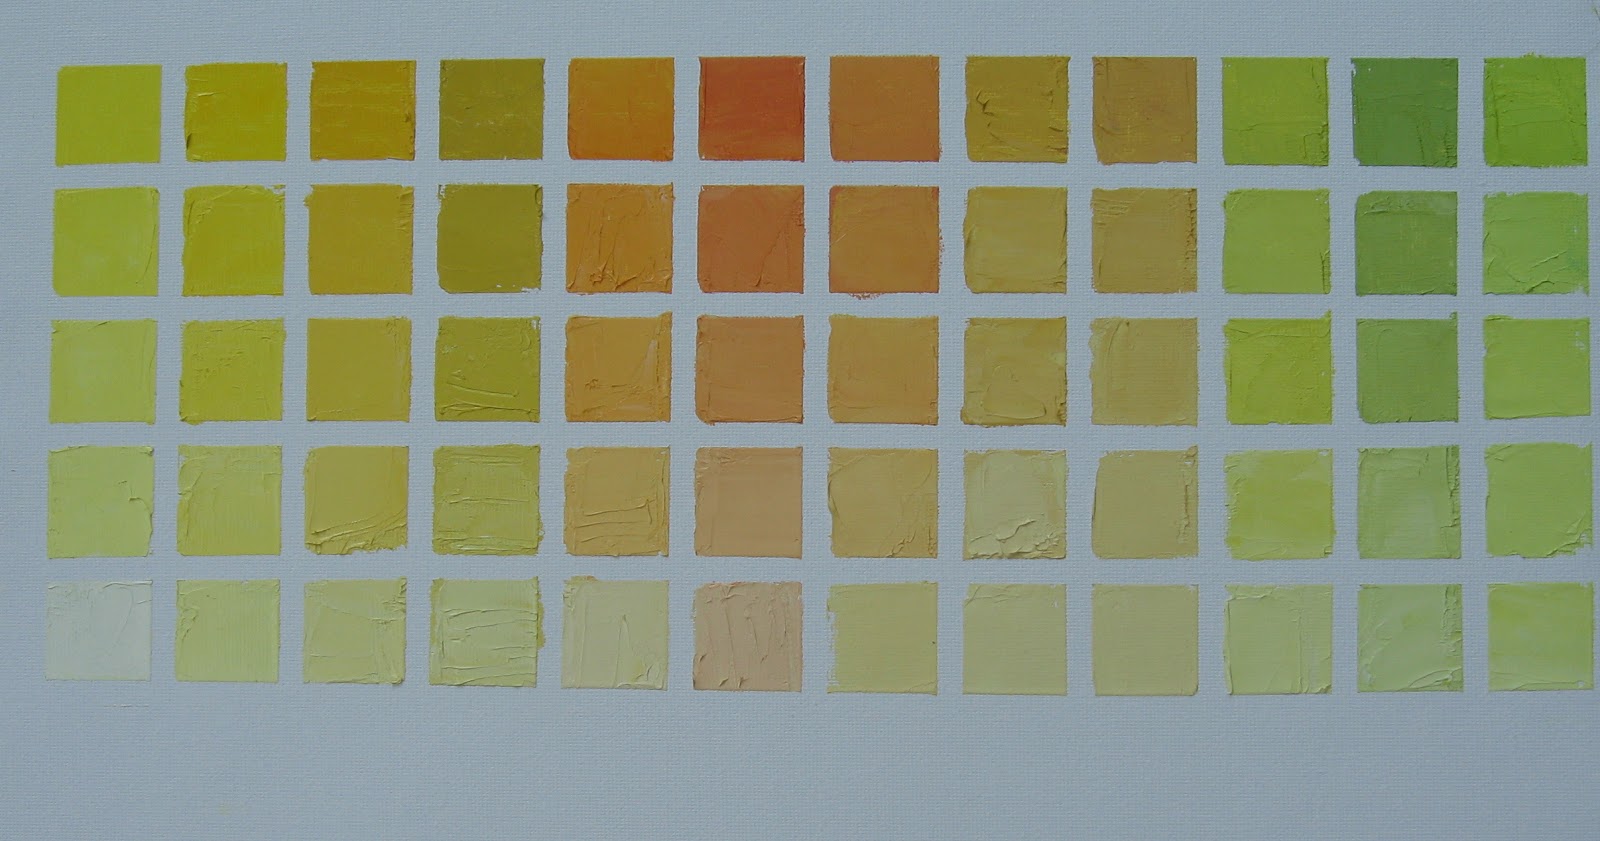 Lifecolor Paint Chart